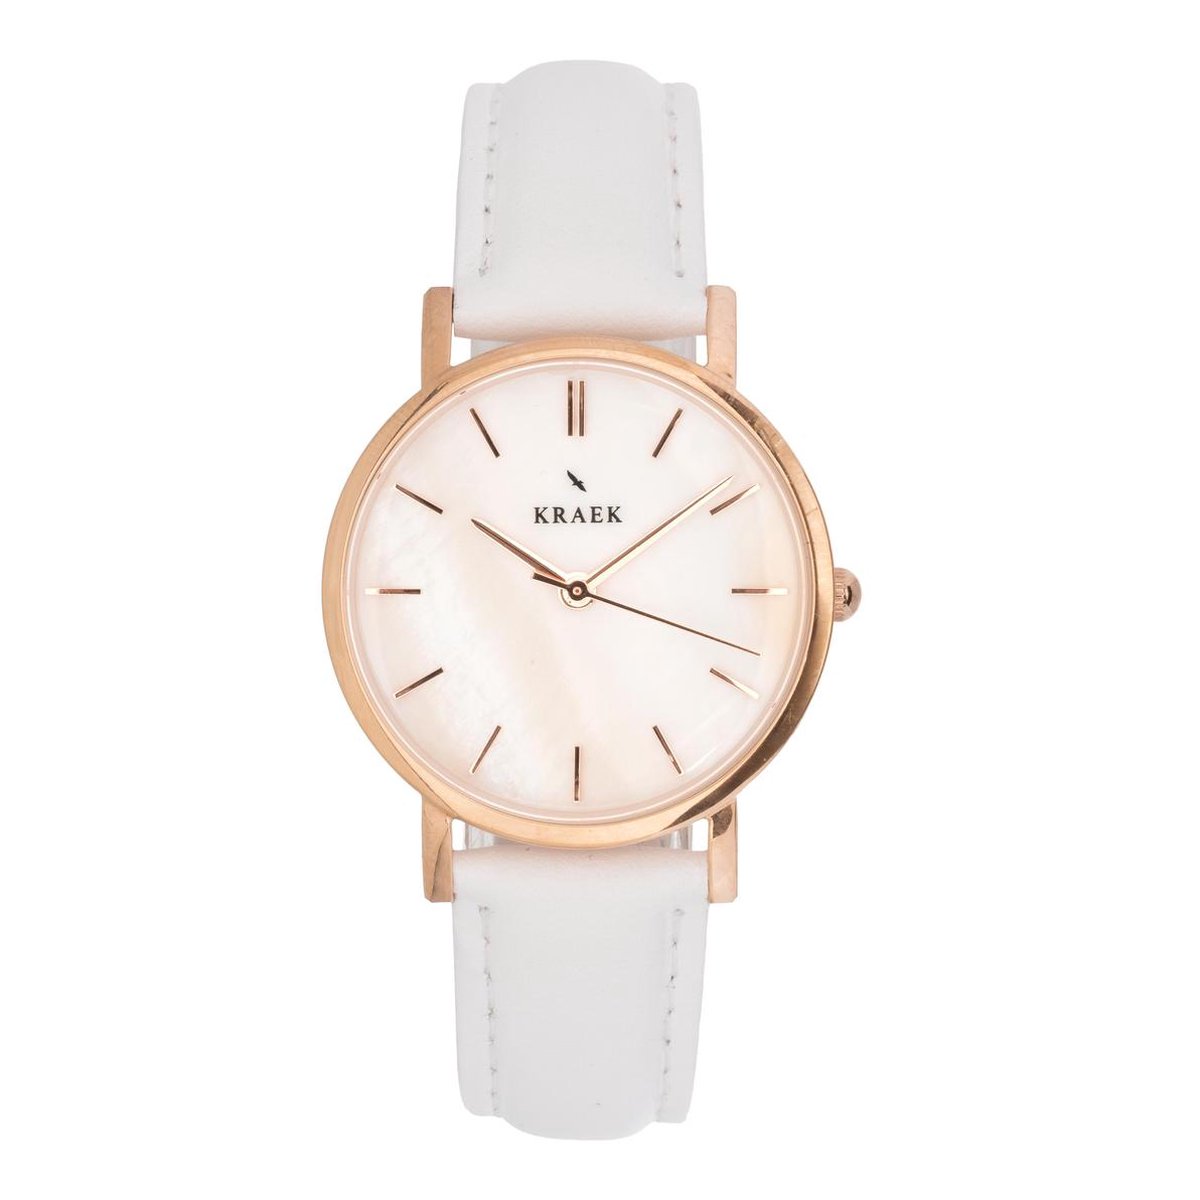 KRAEK Skye Rosé Goud Wit 32 mm | Dames Horloge | Wit leren horlogebandje | Minimaal Design | Solis collectie